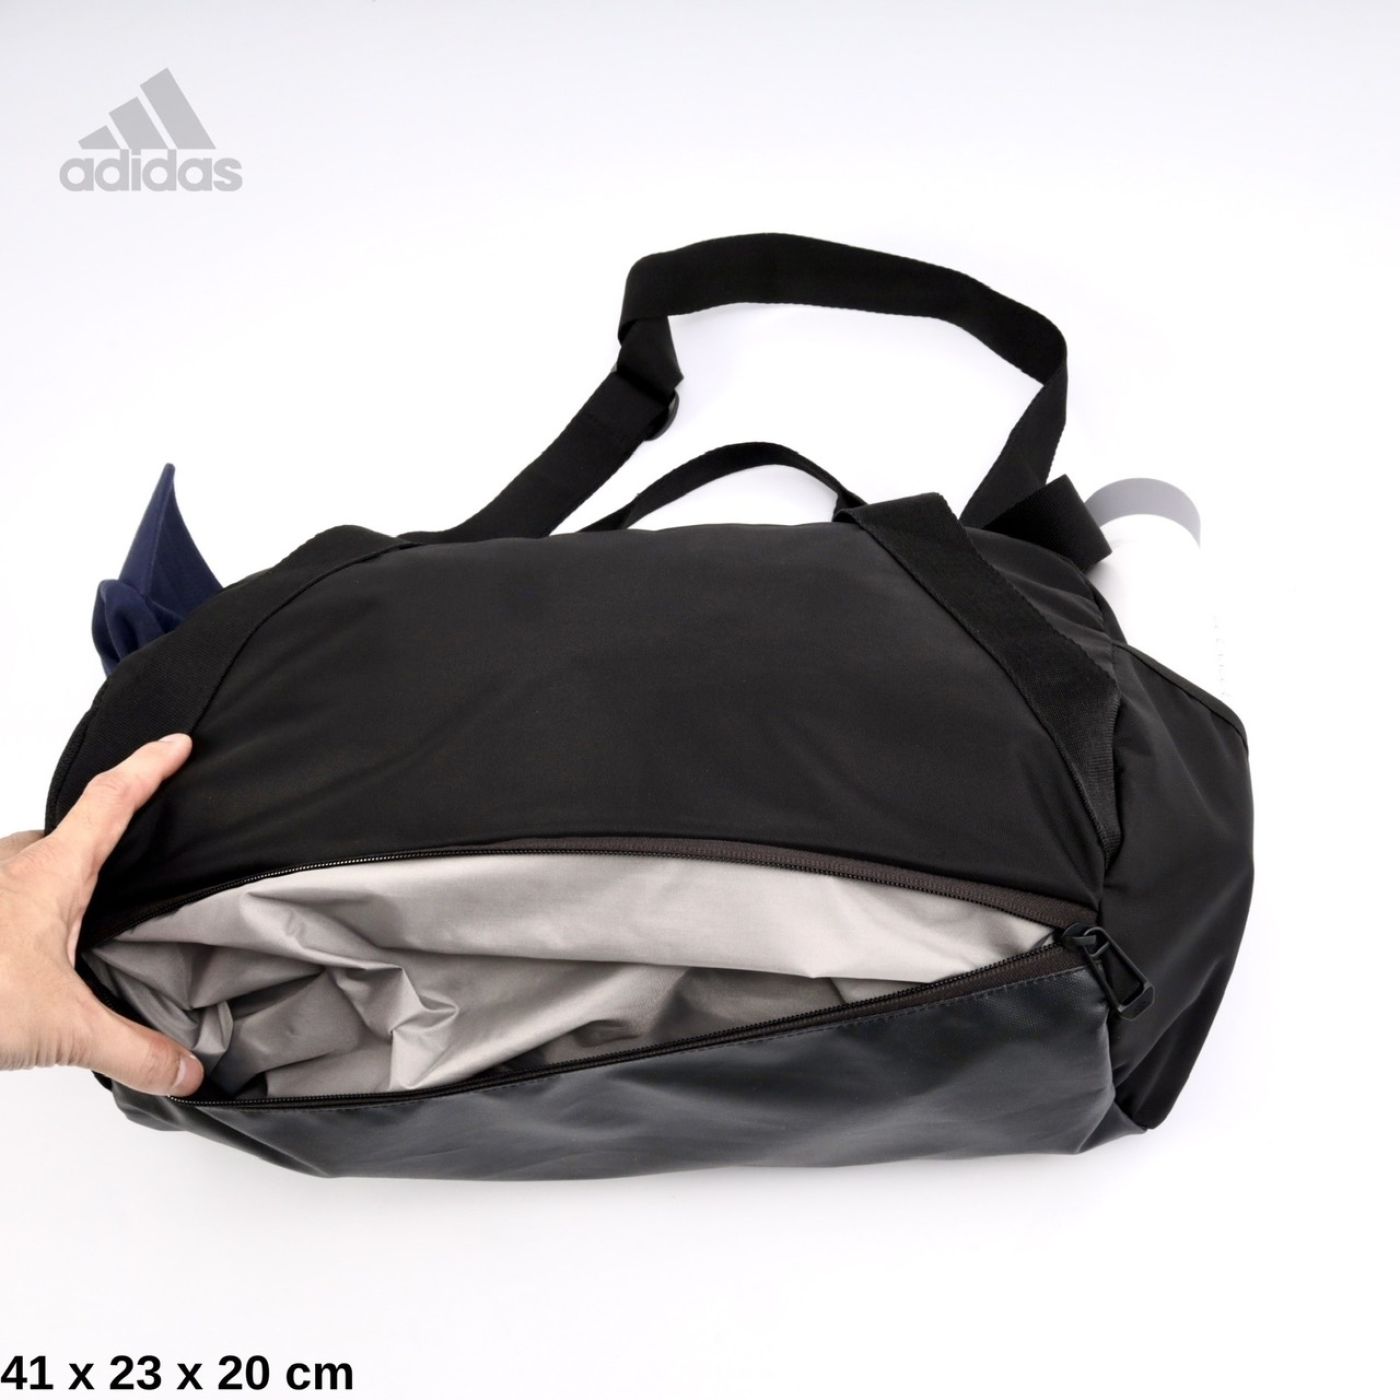 Túi trống Adidas Ripstop Fake cao cấp - Nhiều ngăn, Tiện lợi